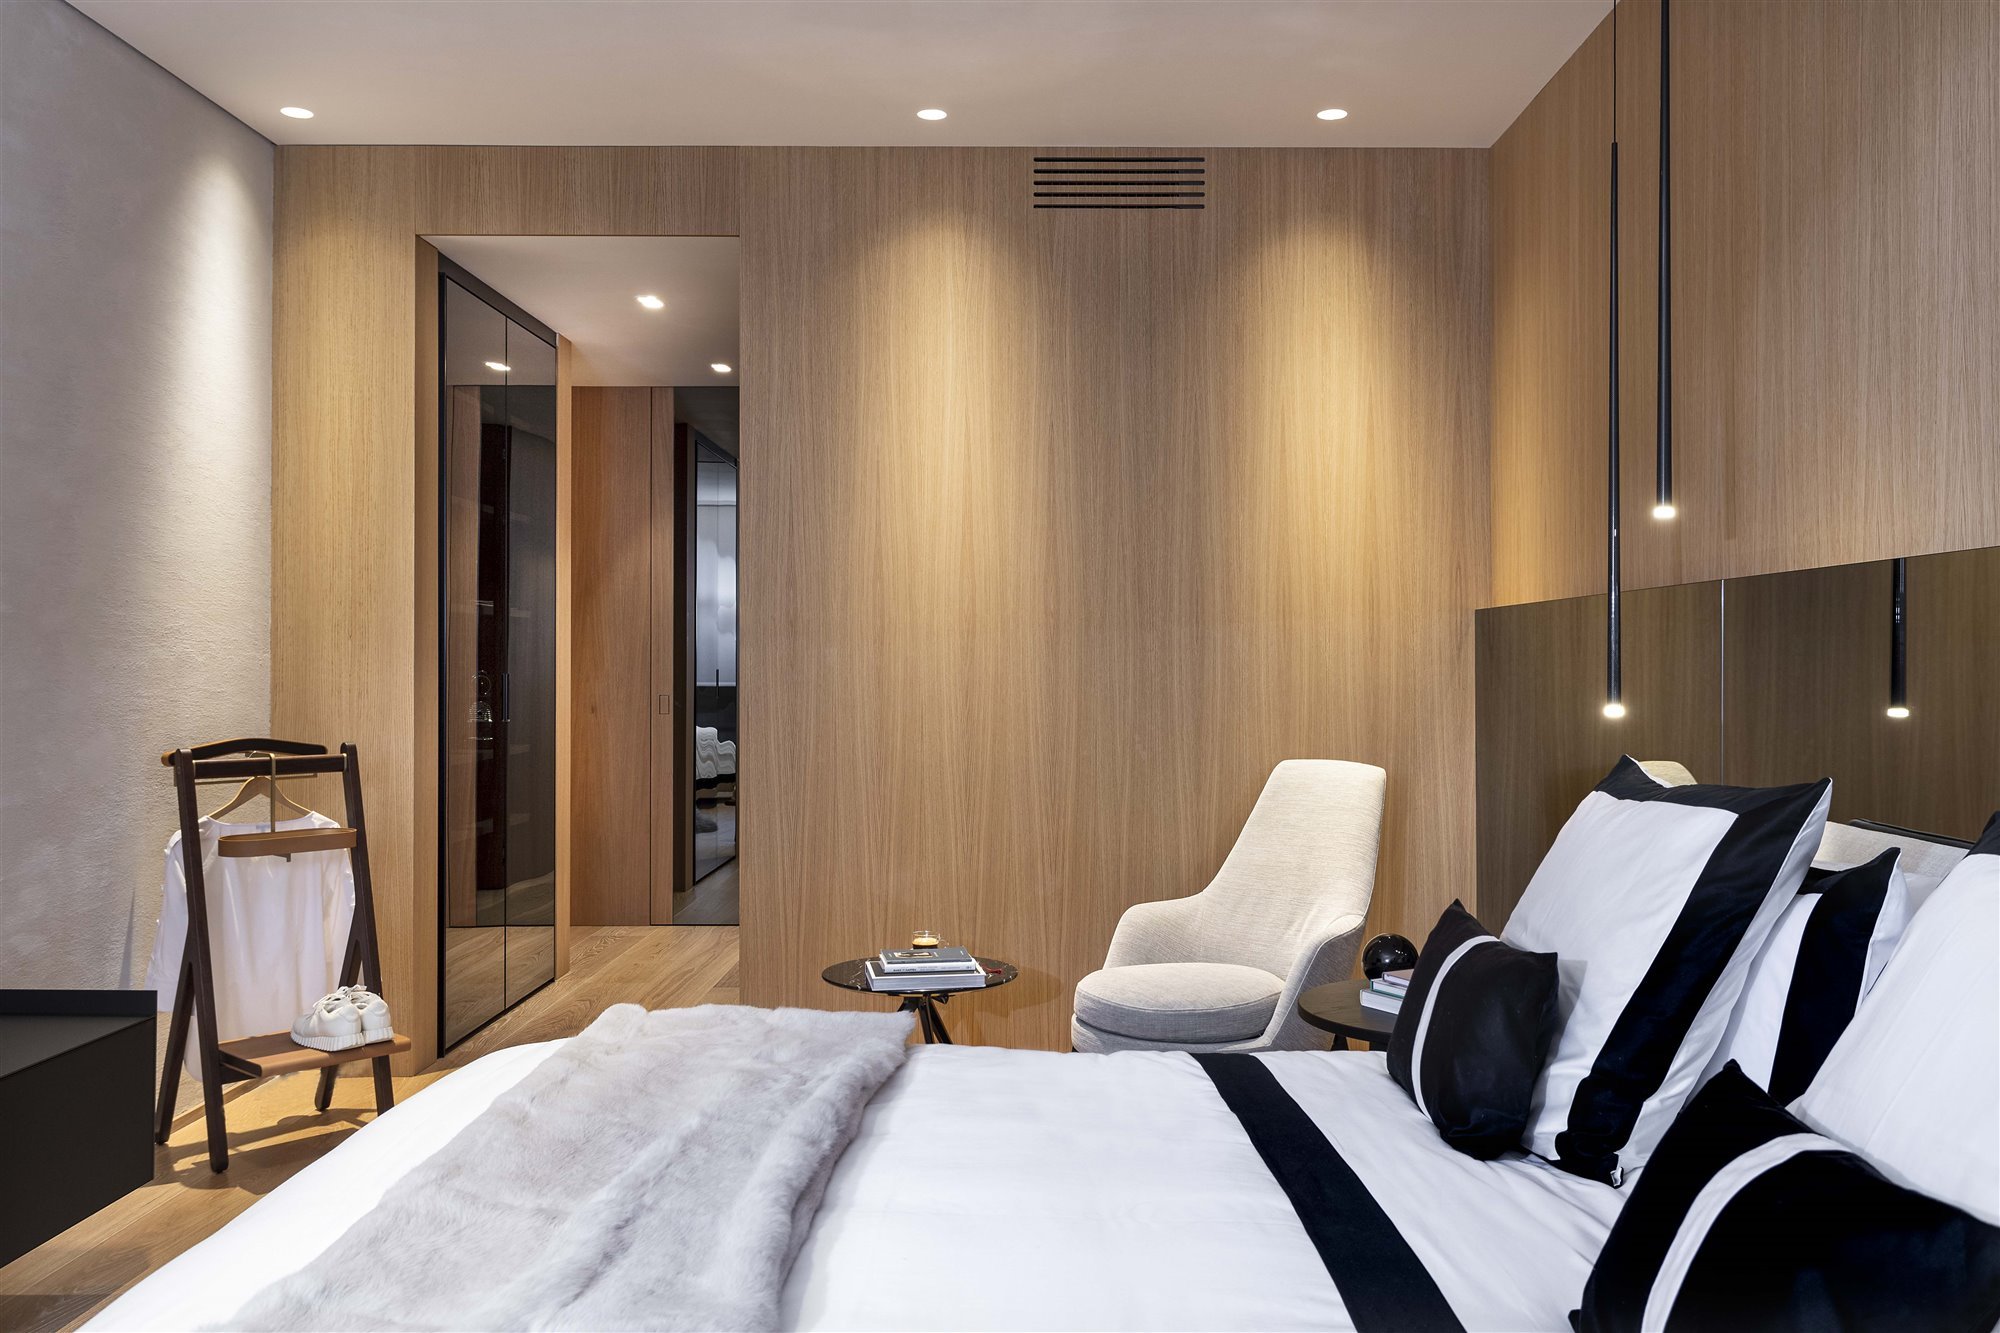 Casa de lujo en Madrid. Dormitorios confortables y adecuados